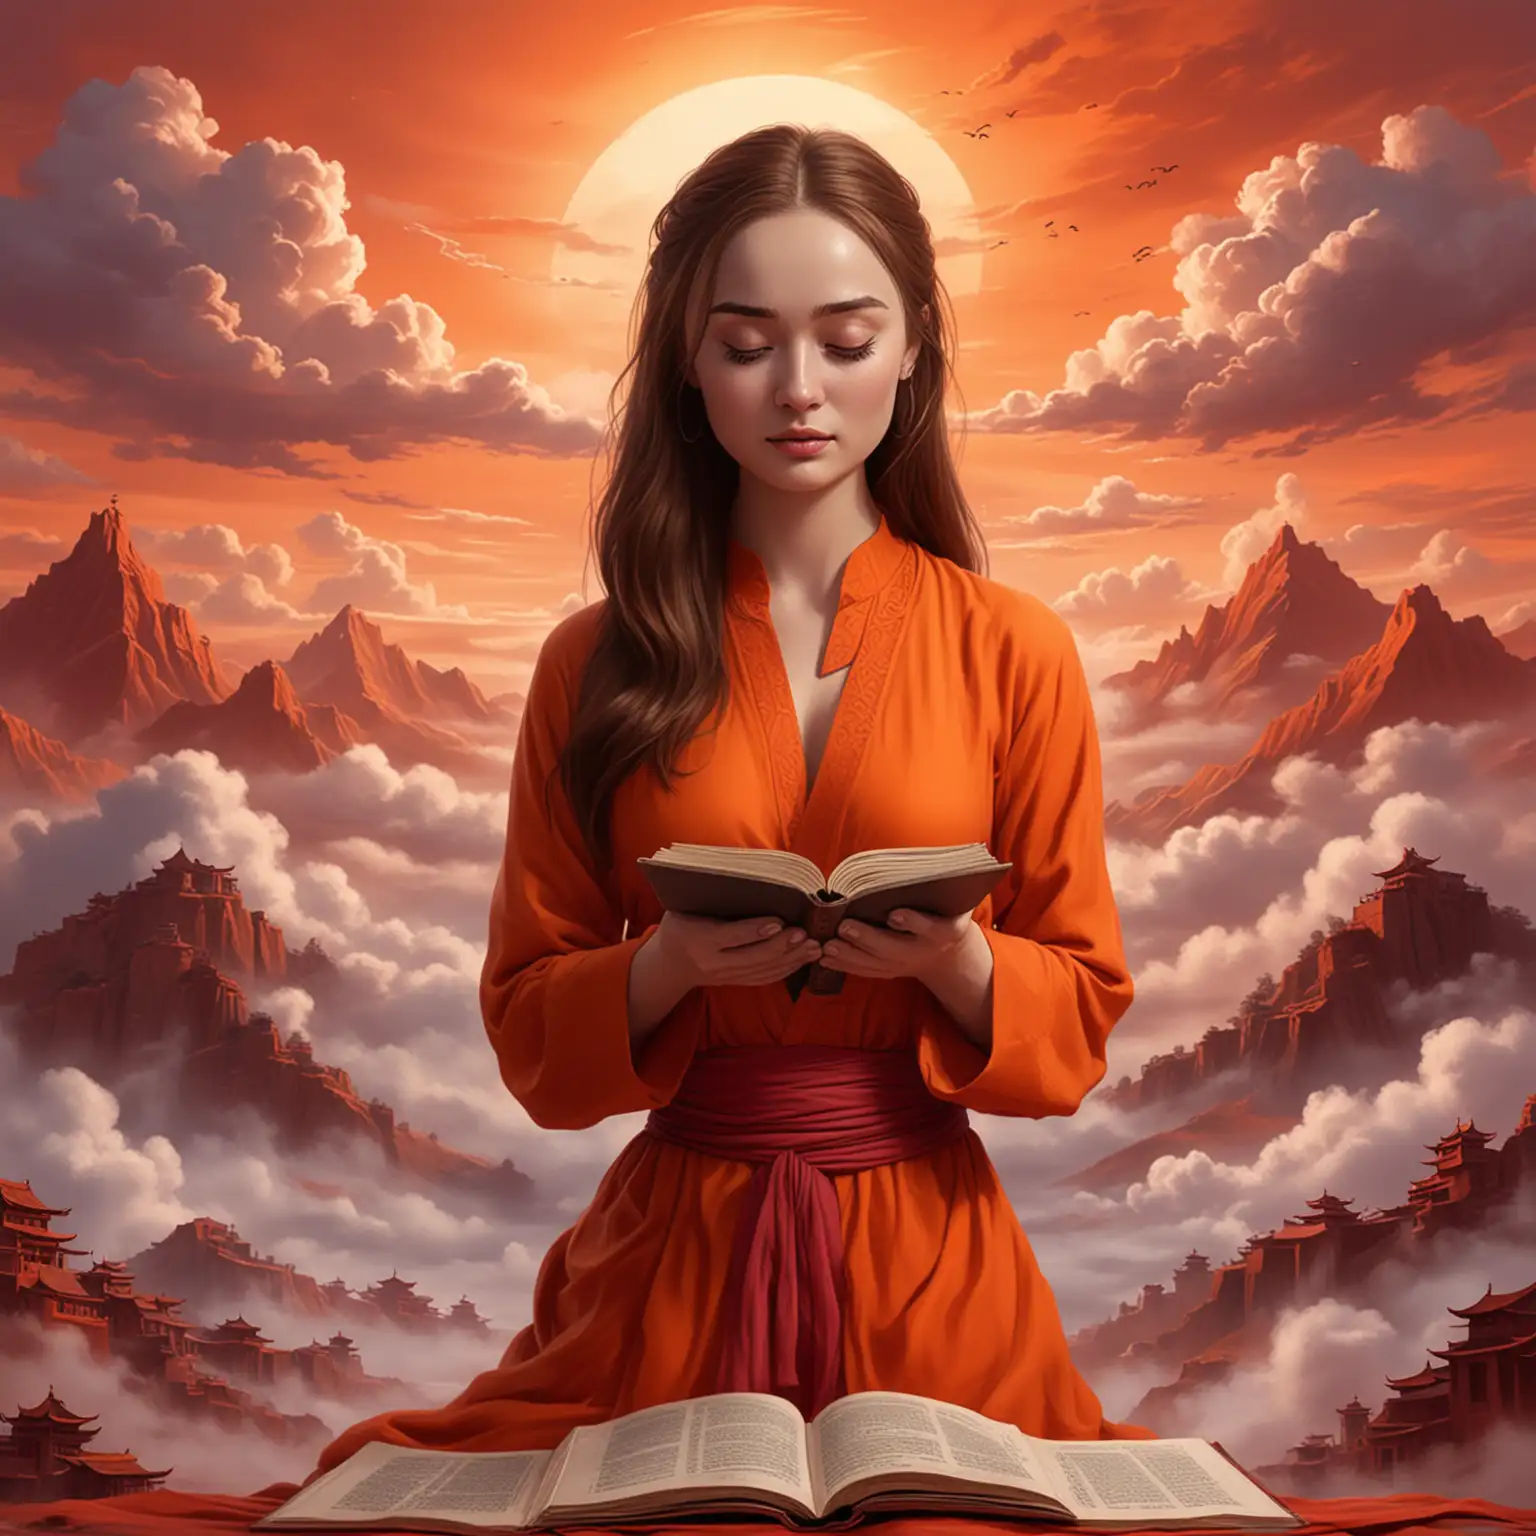 Sophie Turner Cartoon Meditating in Tibetan Landscape with Orange Dress